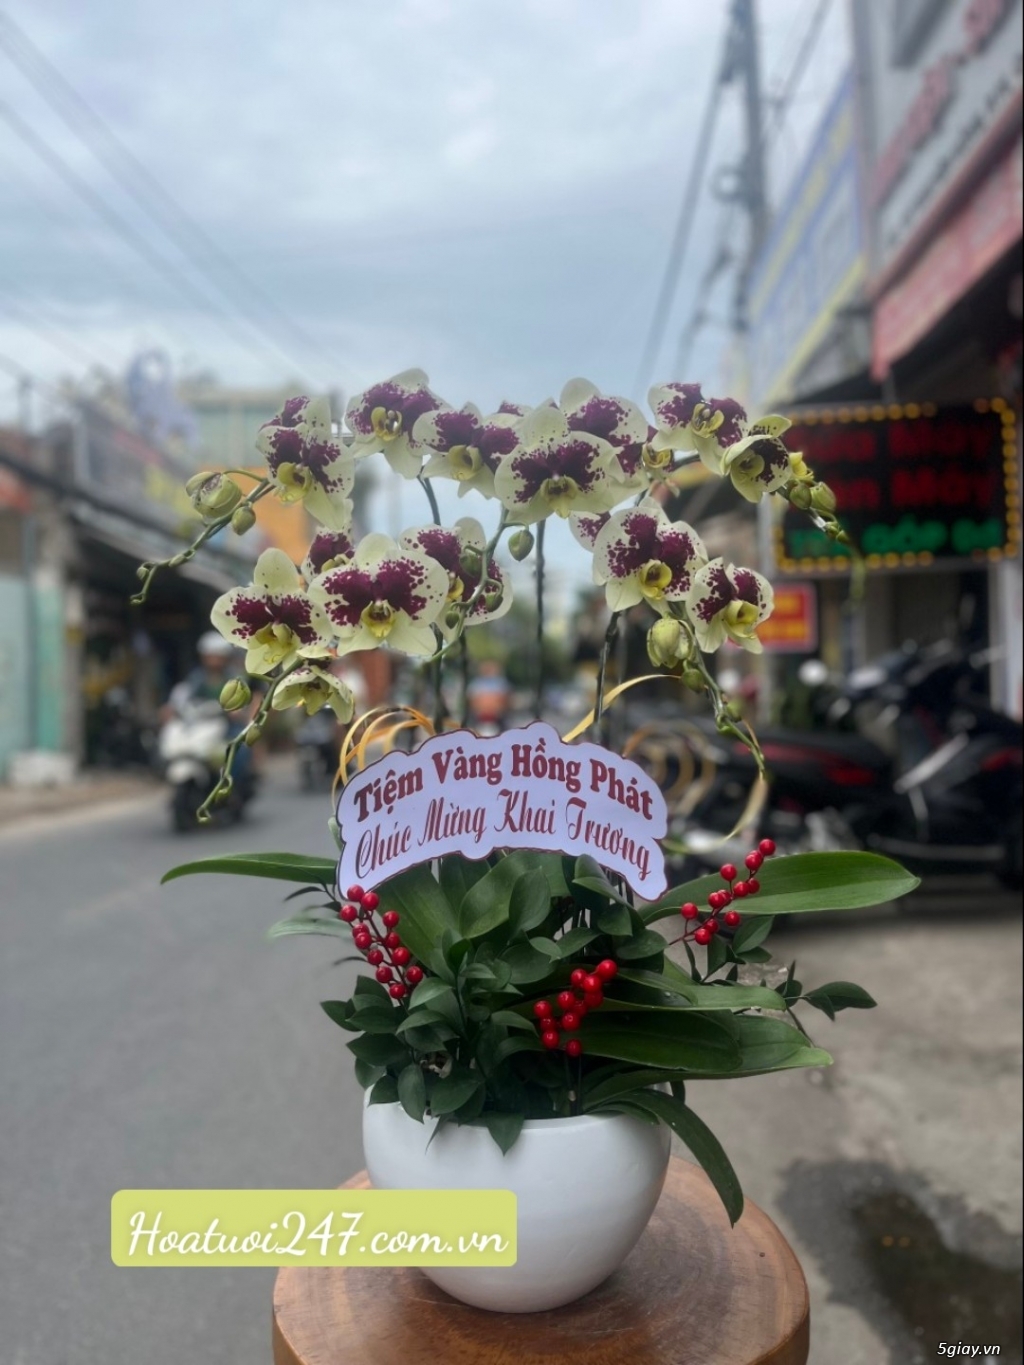 Đặt hoa lan hô điệp ở đâu đẹp nhất tại tphcm - Hoa Tươi 247 Sài Gòn - 10